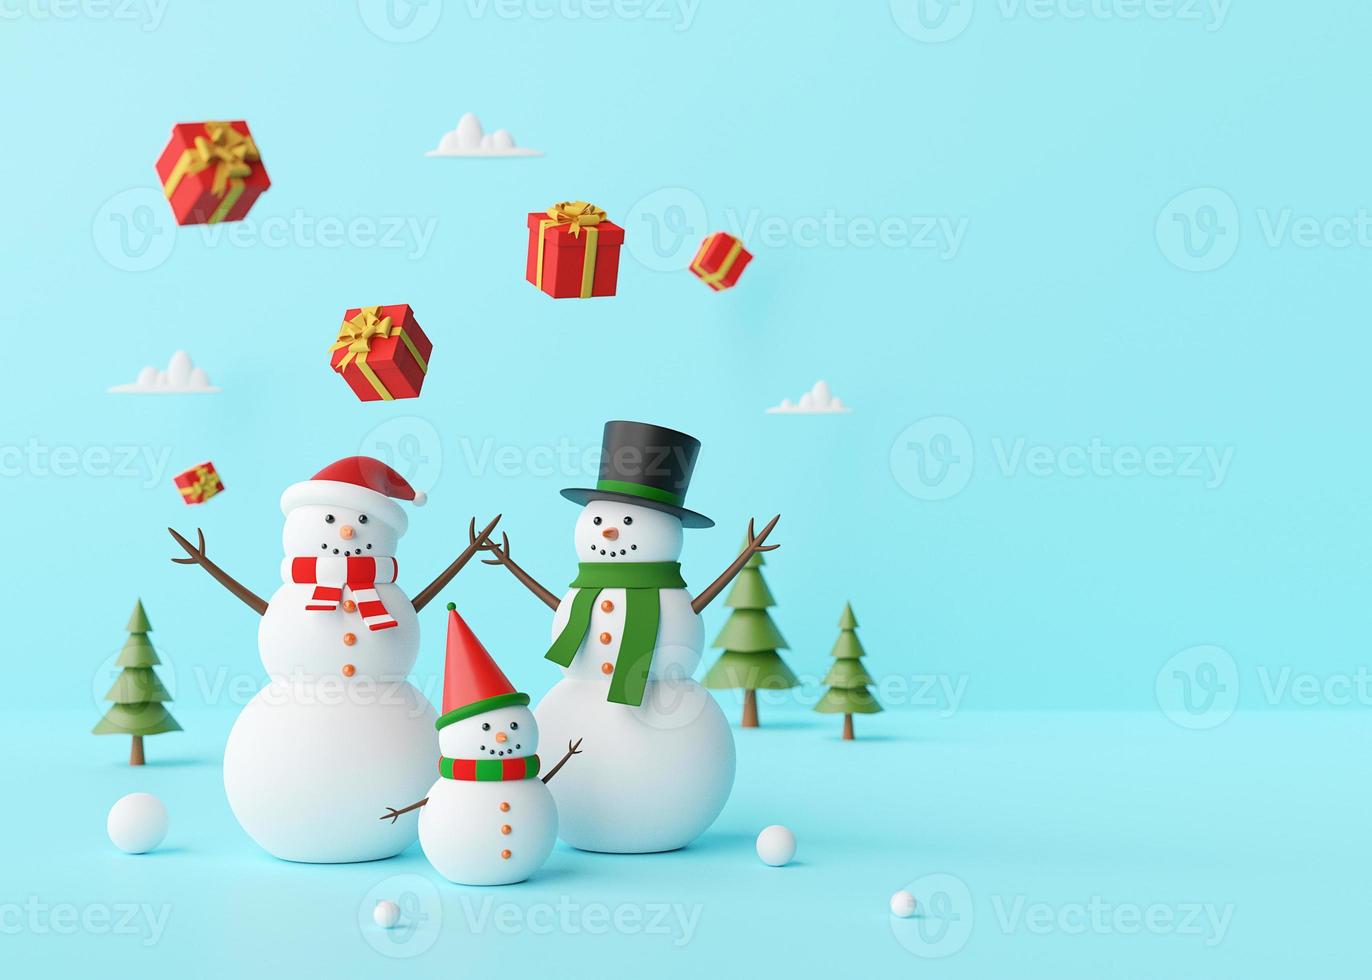 god jul, snögubbe njuter med julklappar på en blå bakgrund, 3d -rendering foto